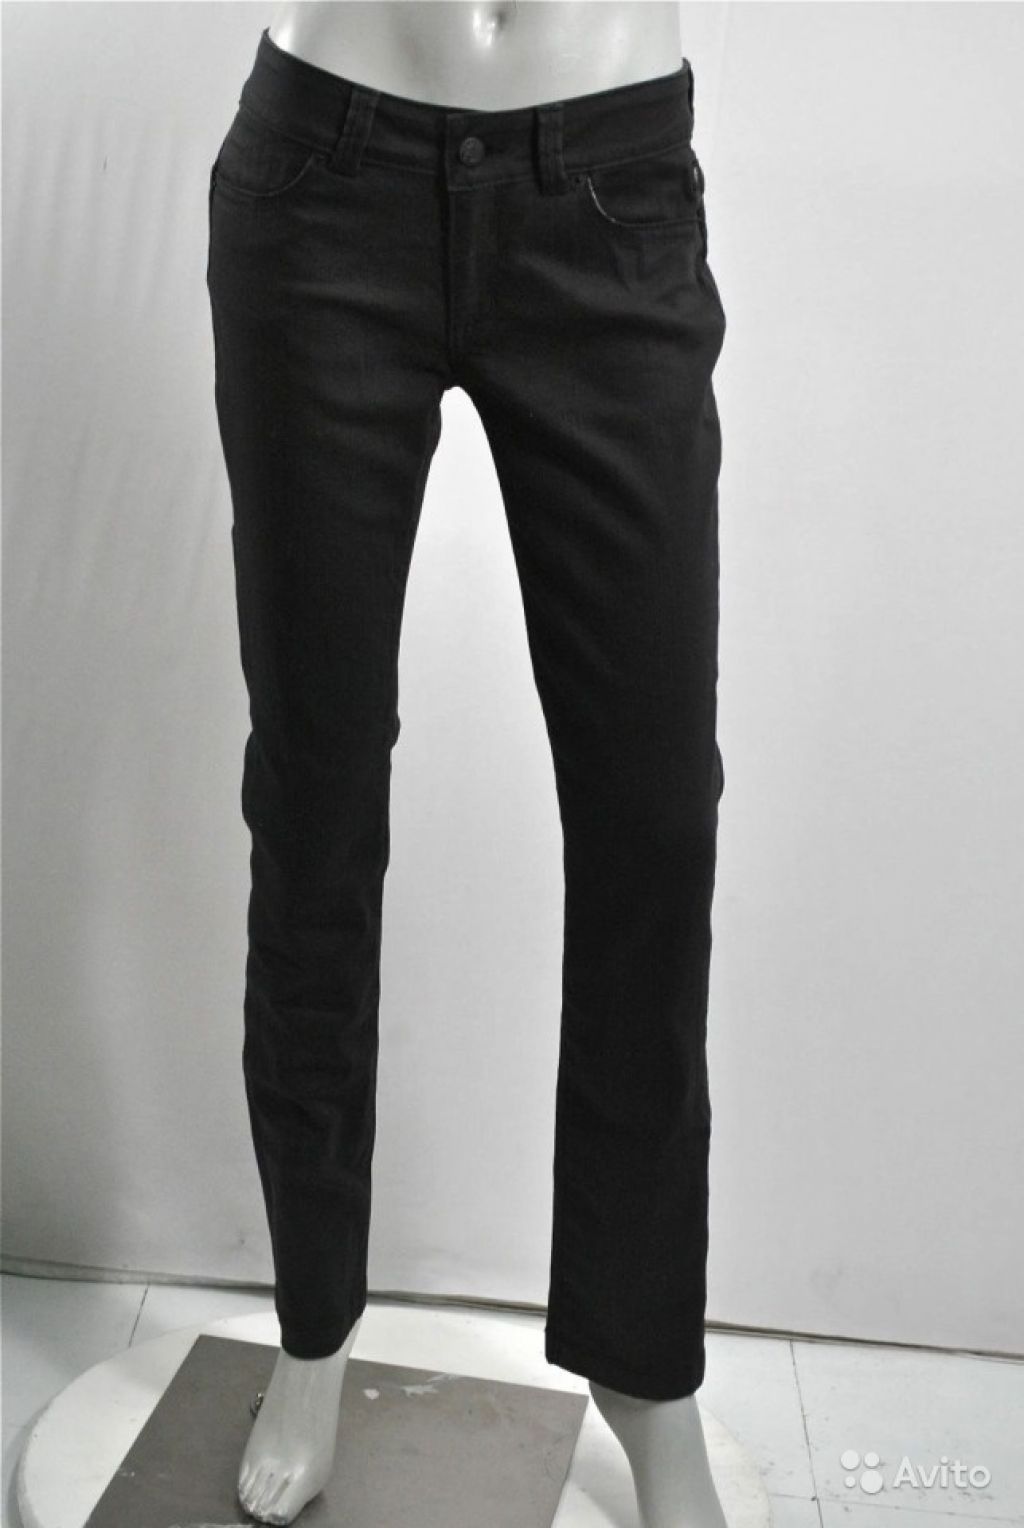 Serfontaine узкие черные джинсы, 24 в Москве. Фото 1